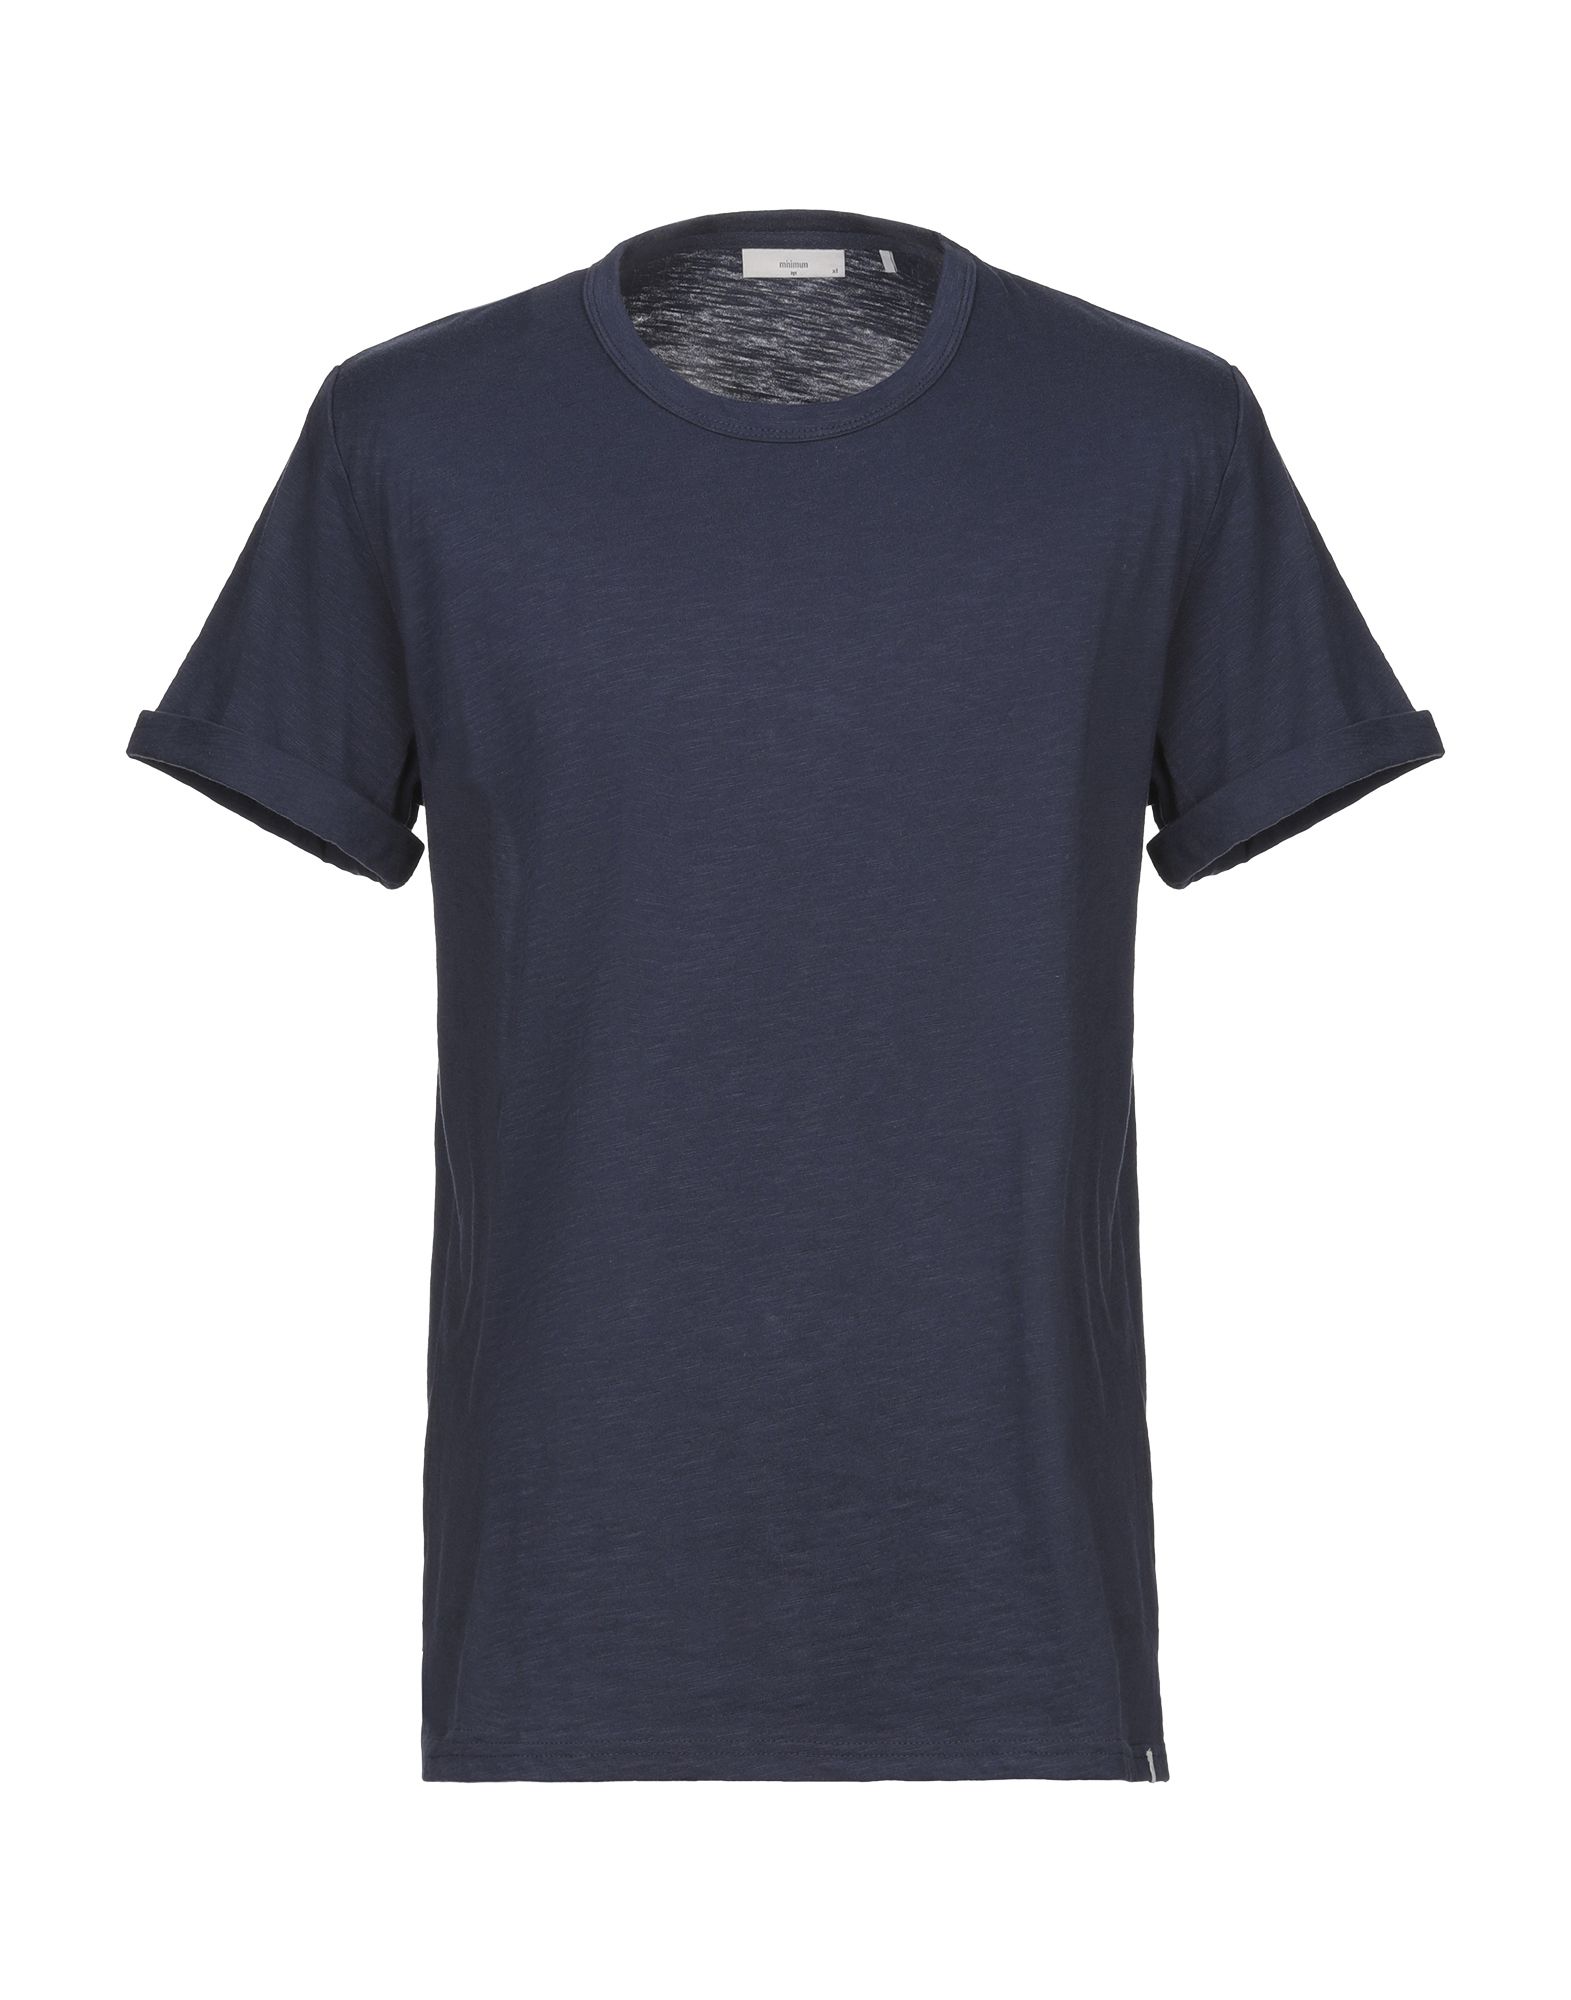 MINIMUM T-shirts Herren Nachtblau von MINIMUM